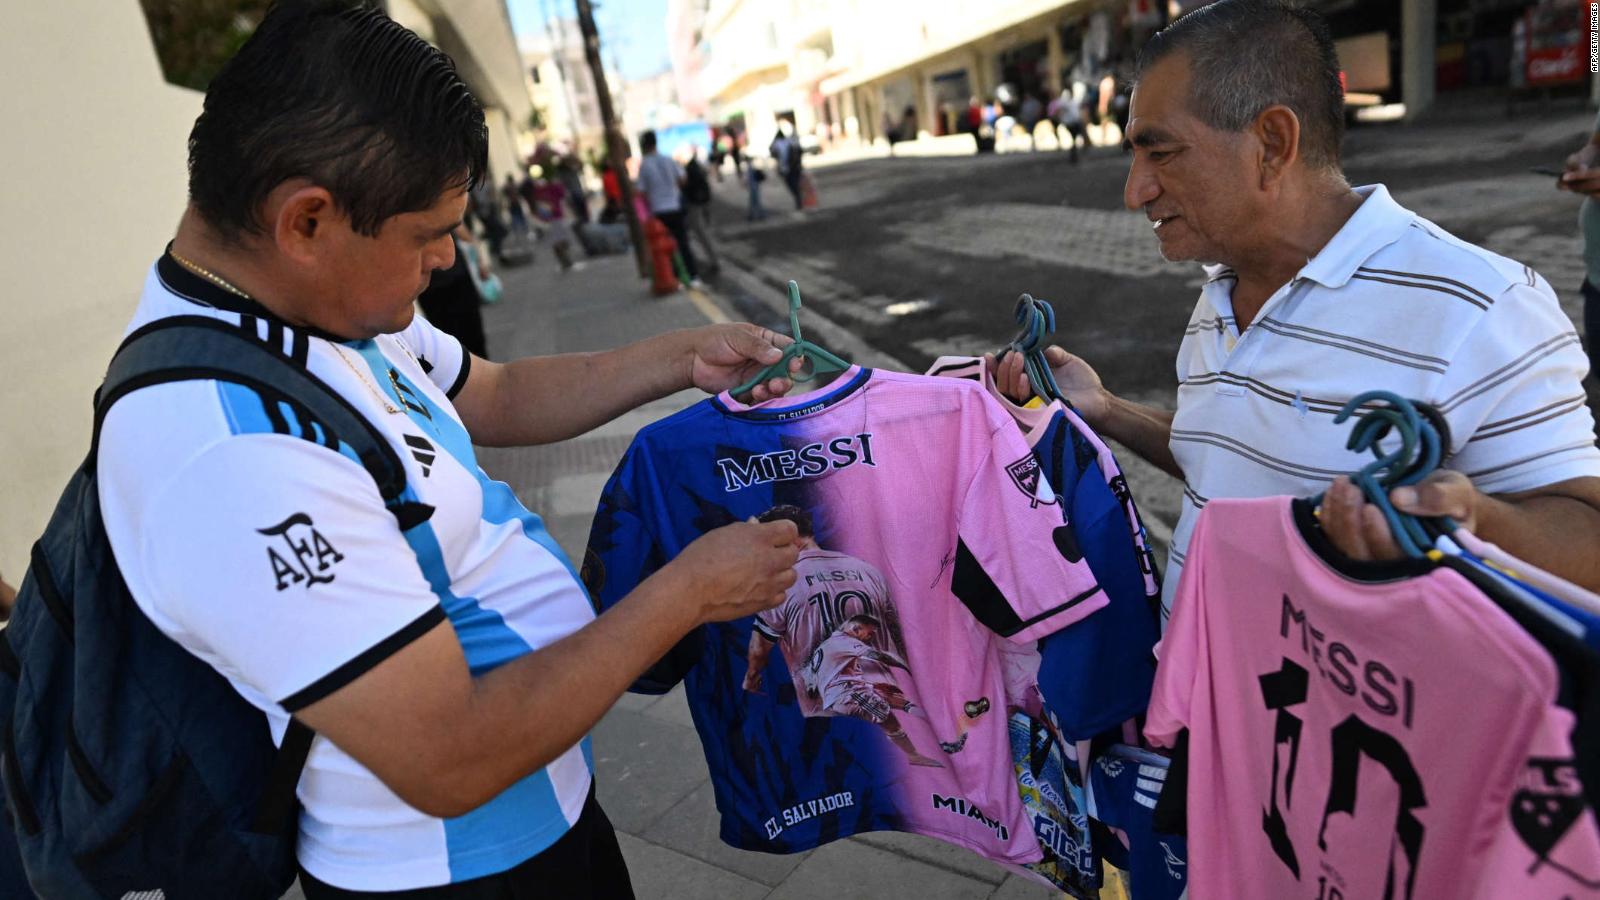 Conoce la camiseta de Messi dedicada al amistoso El Salvador vs Inter Miami  - Noticias de El Salvador